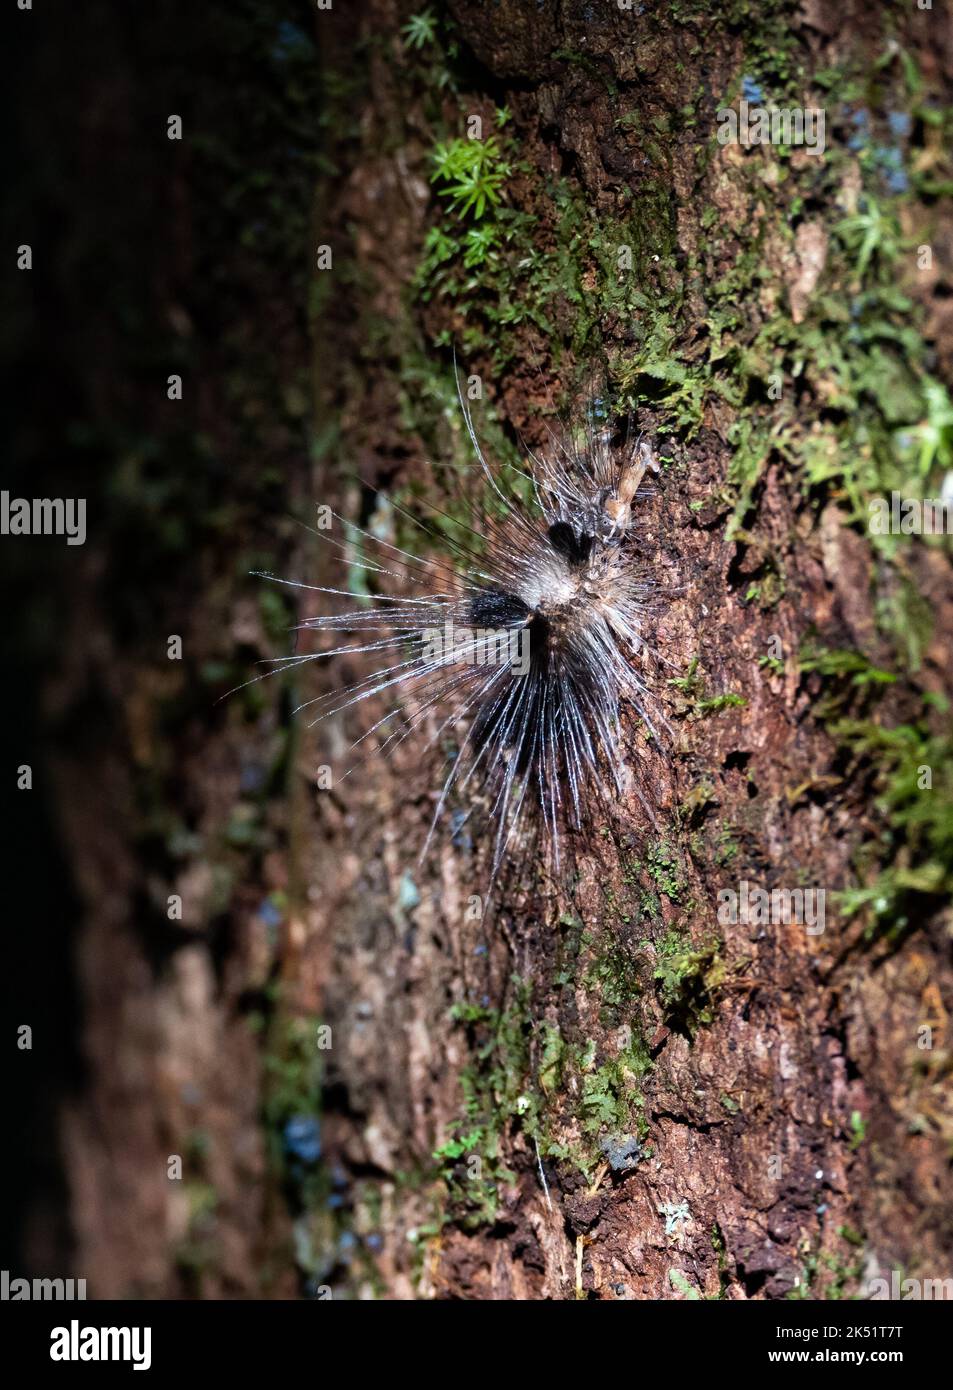 Une chenille poilue () sur un tronc d'arbre dans la forêt tropicale. Amazonas, Brésil. Banque D'Images